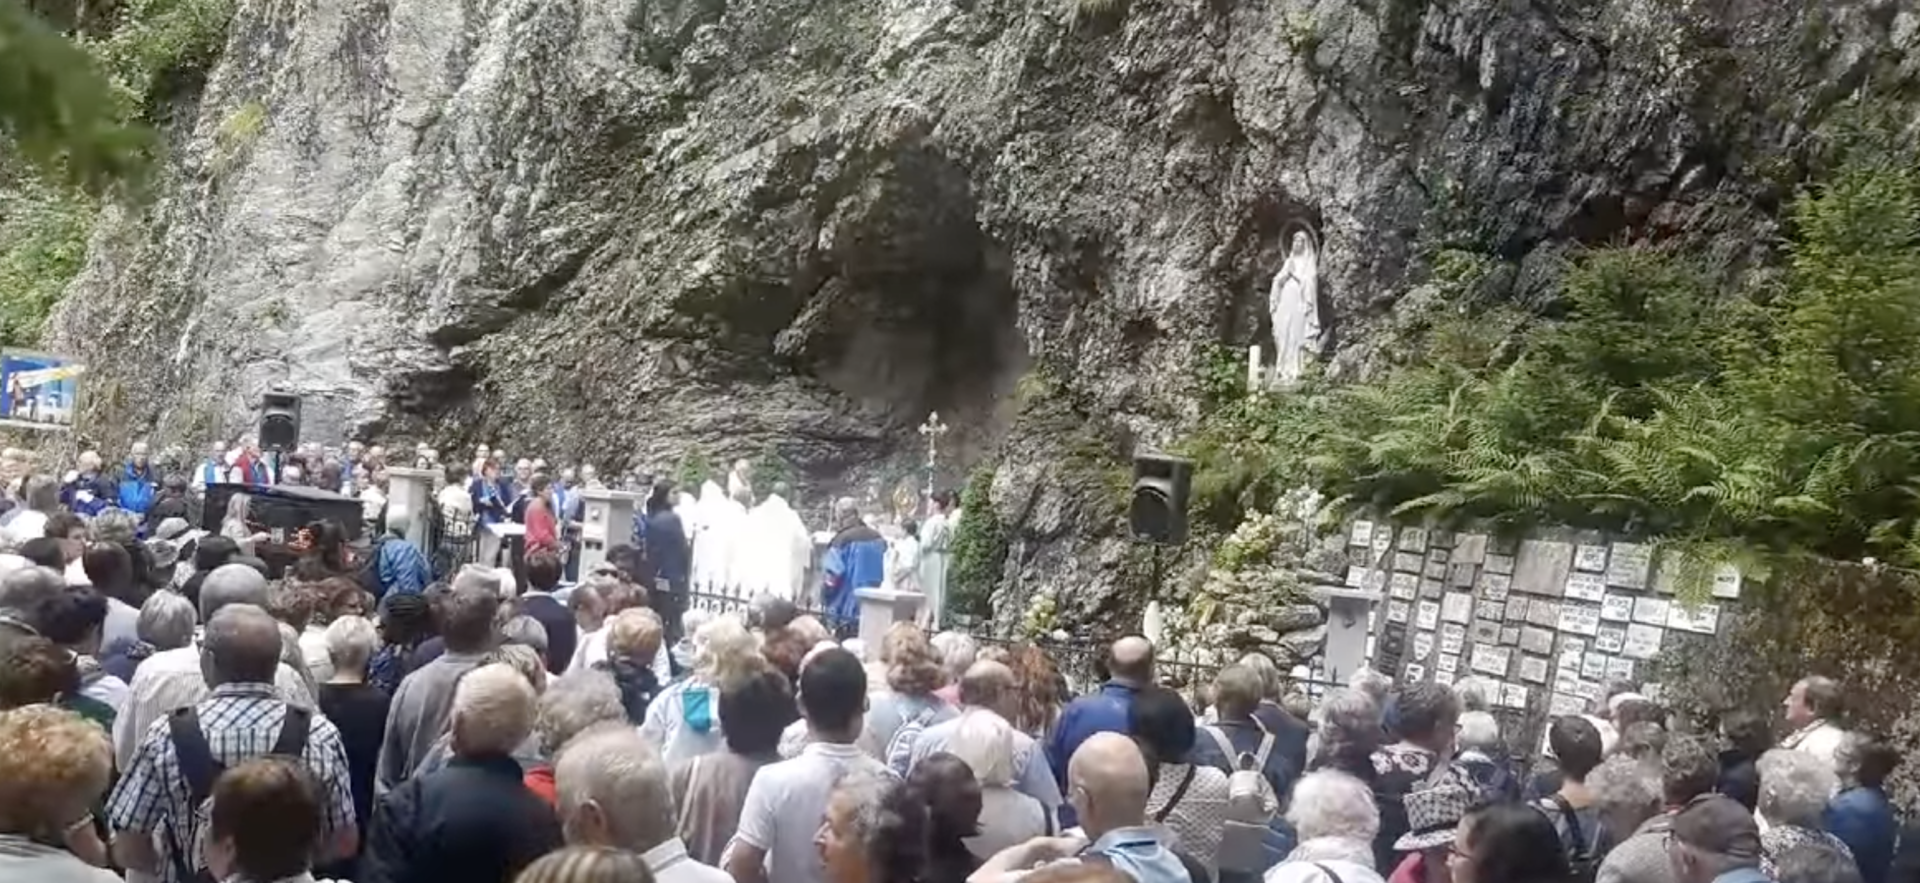 Le pèlerinage de la grotte de Lourdes à Grandvillard (FR) en 2019 | capture d'écran YouTube (heroslocaux.ch)